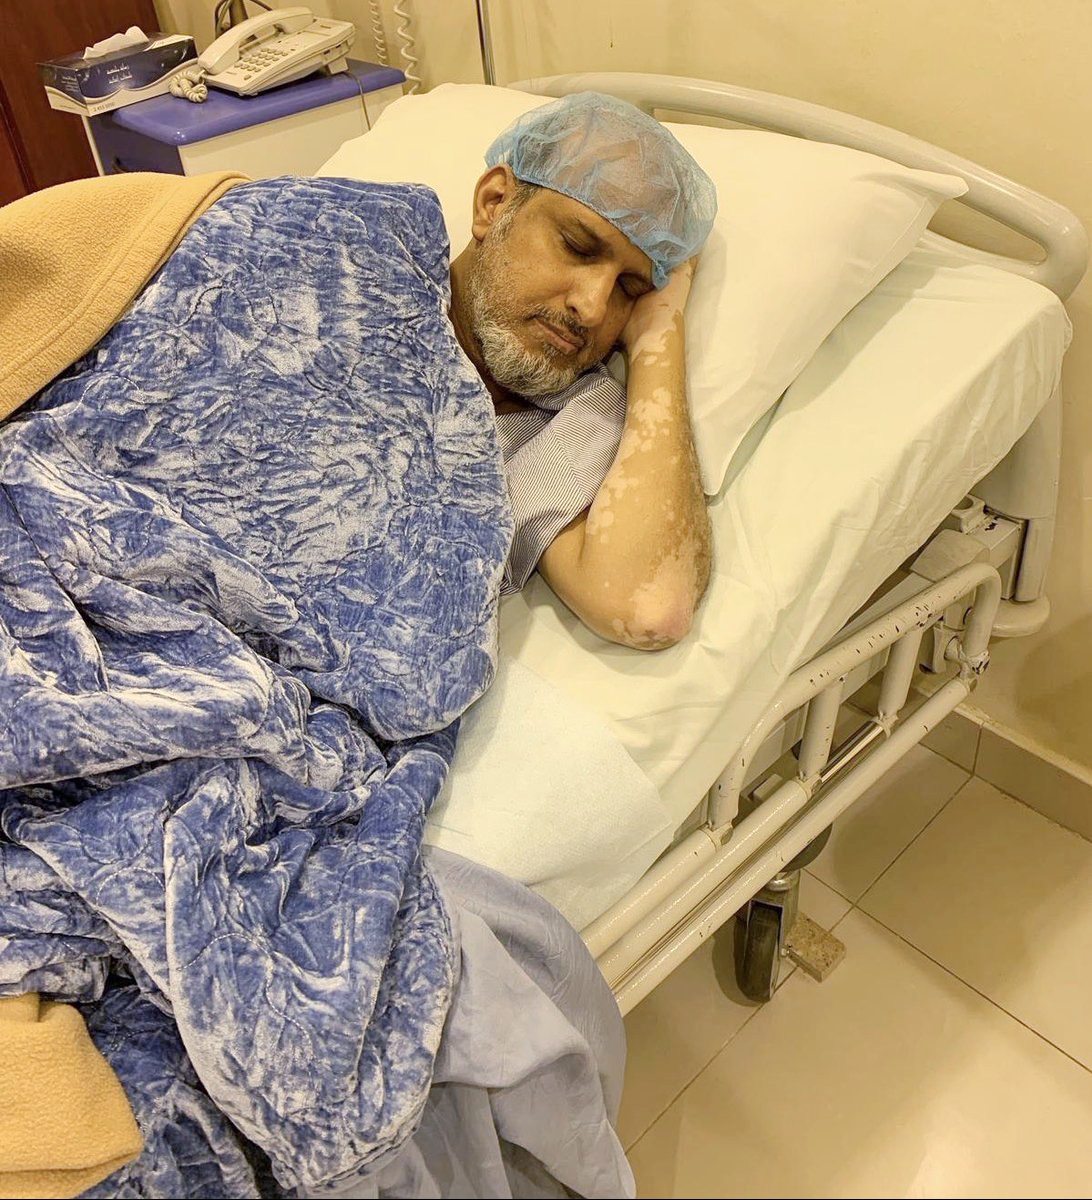 خالد العجيرب مستلقياً على سرير المشفى بعد القيام بعمل جراحي